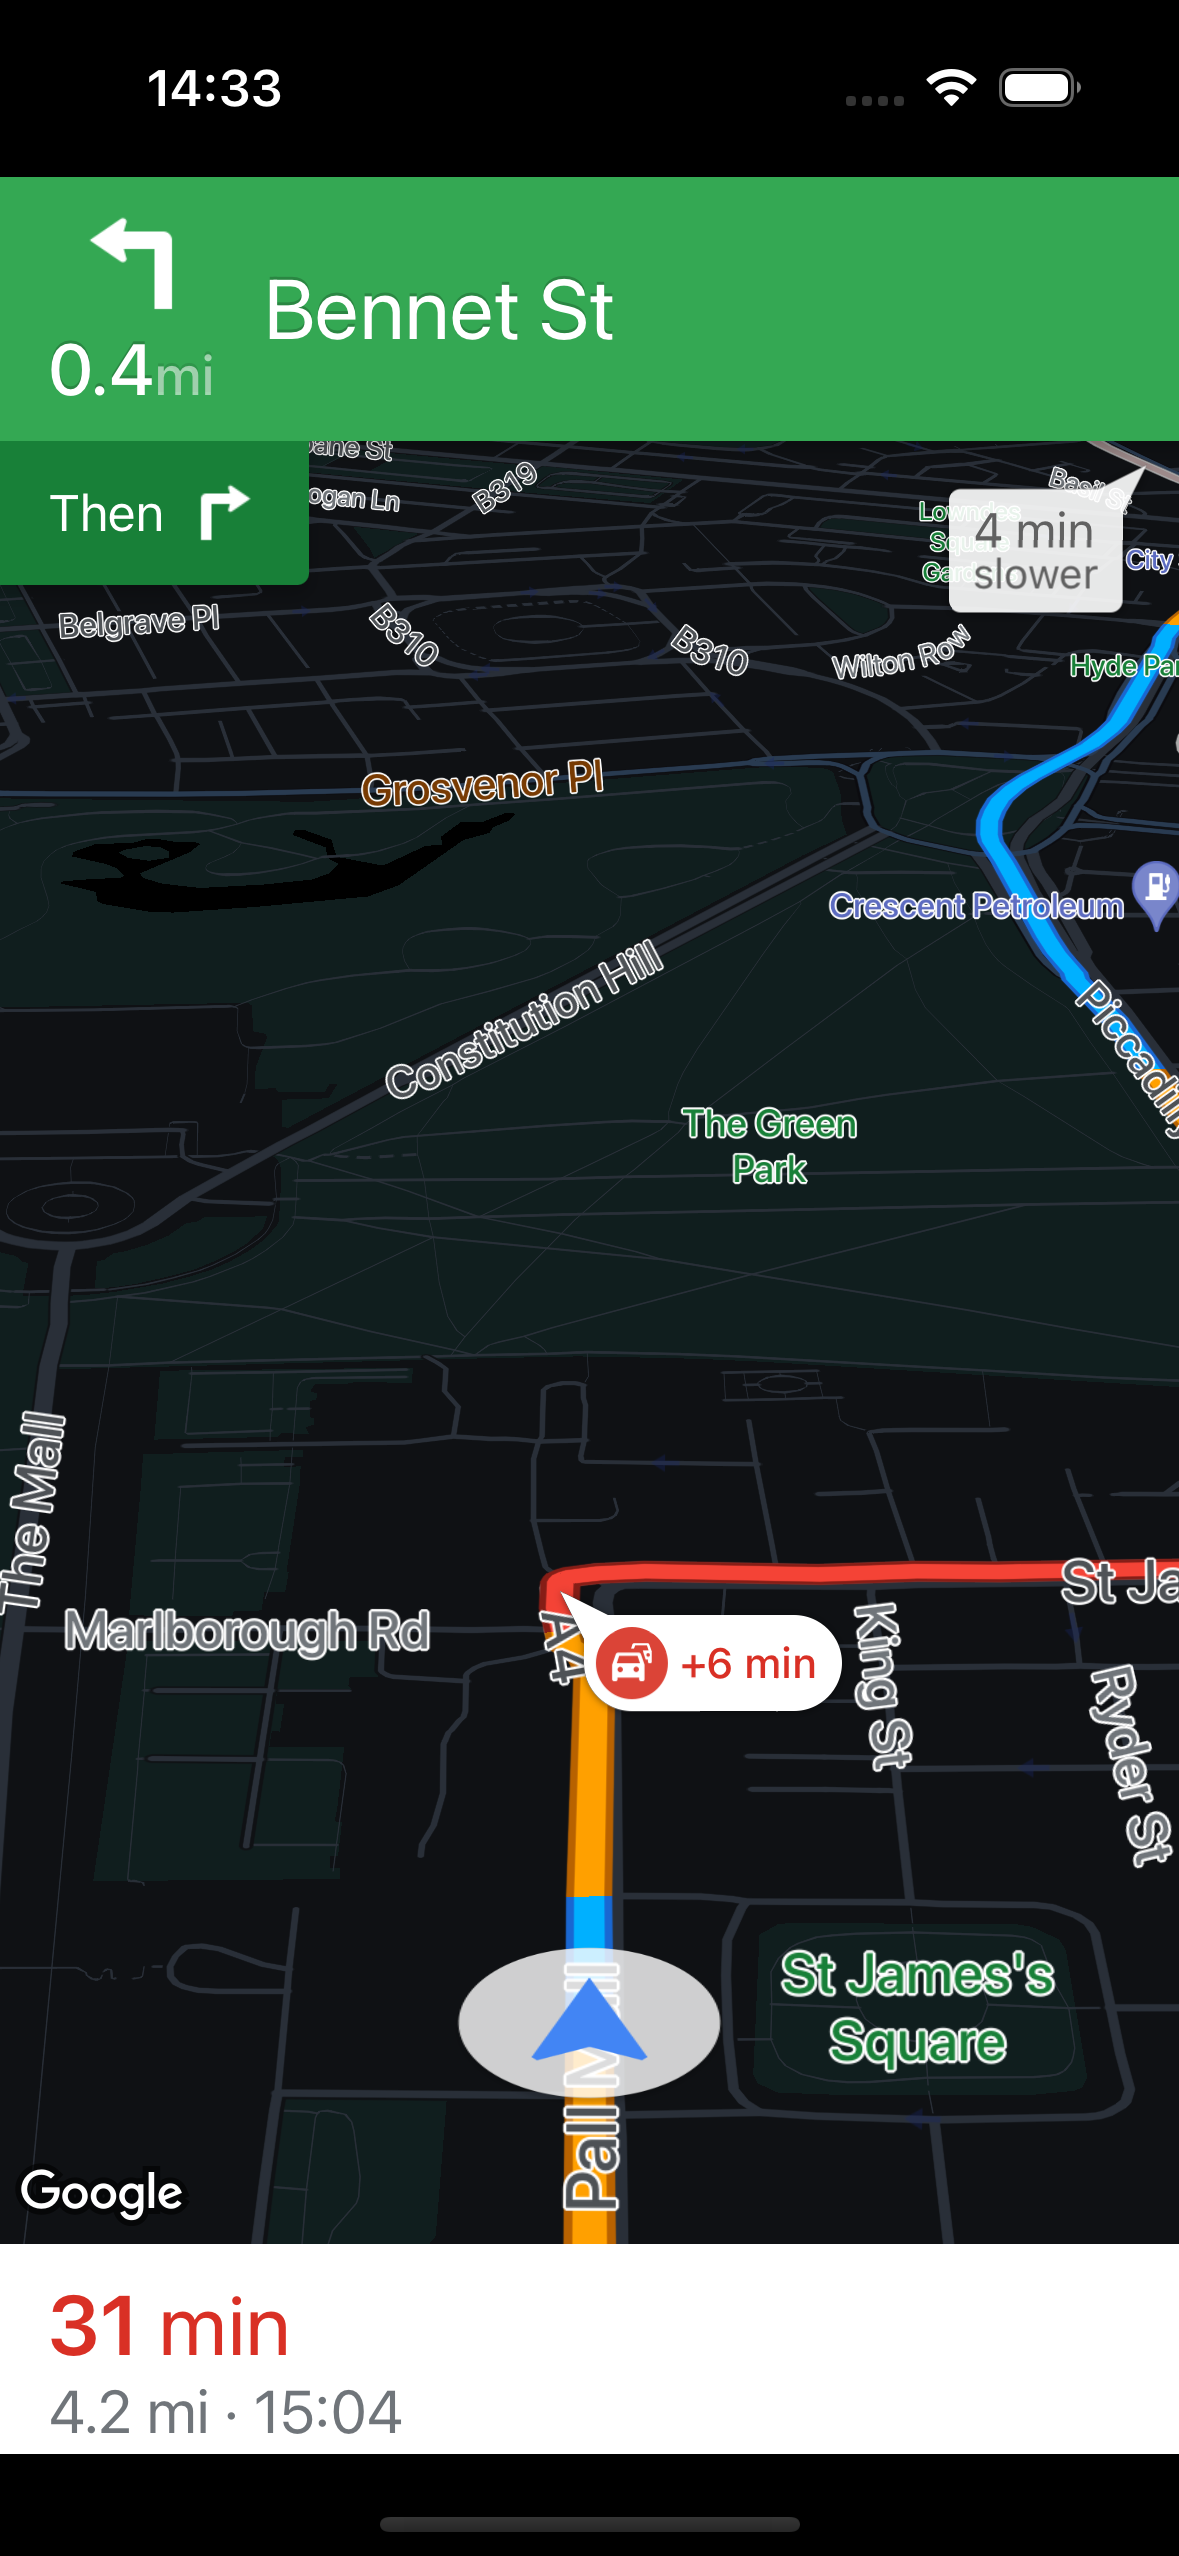 在 iPhone 15 Pro 上執行 Navigation SDK 並採用深色地圖樣式的螢幕截圖。